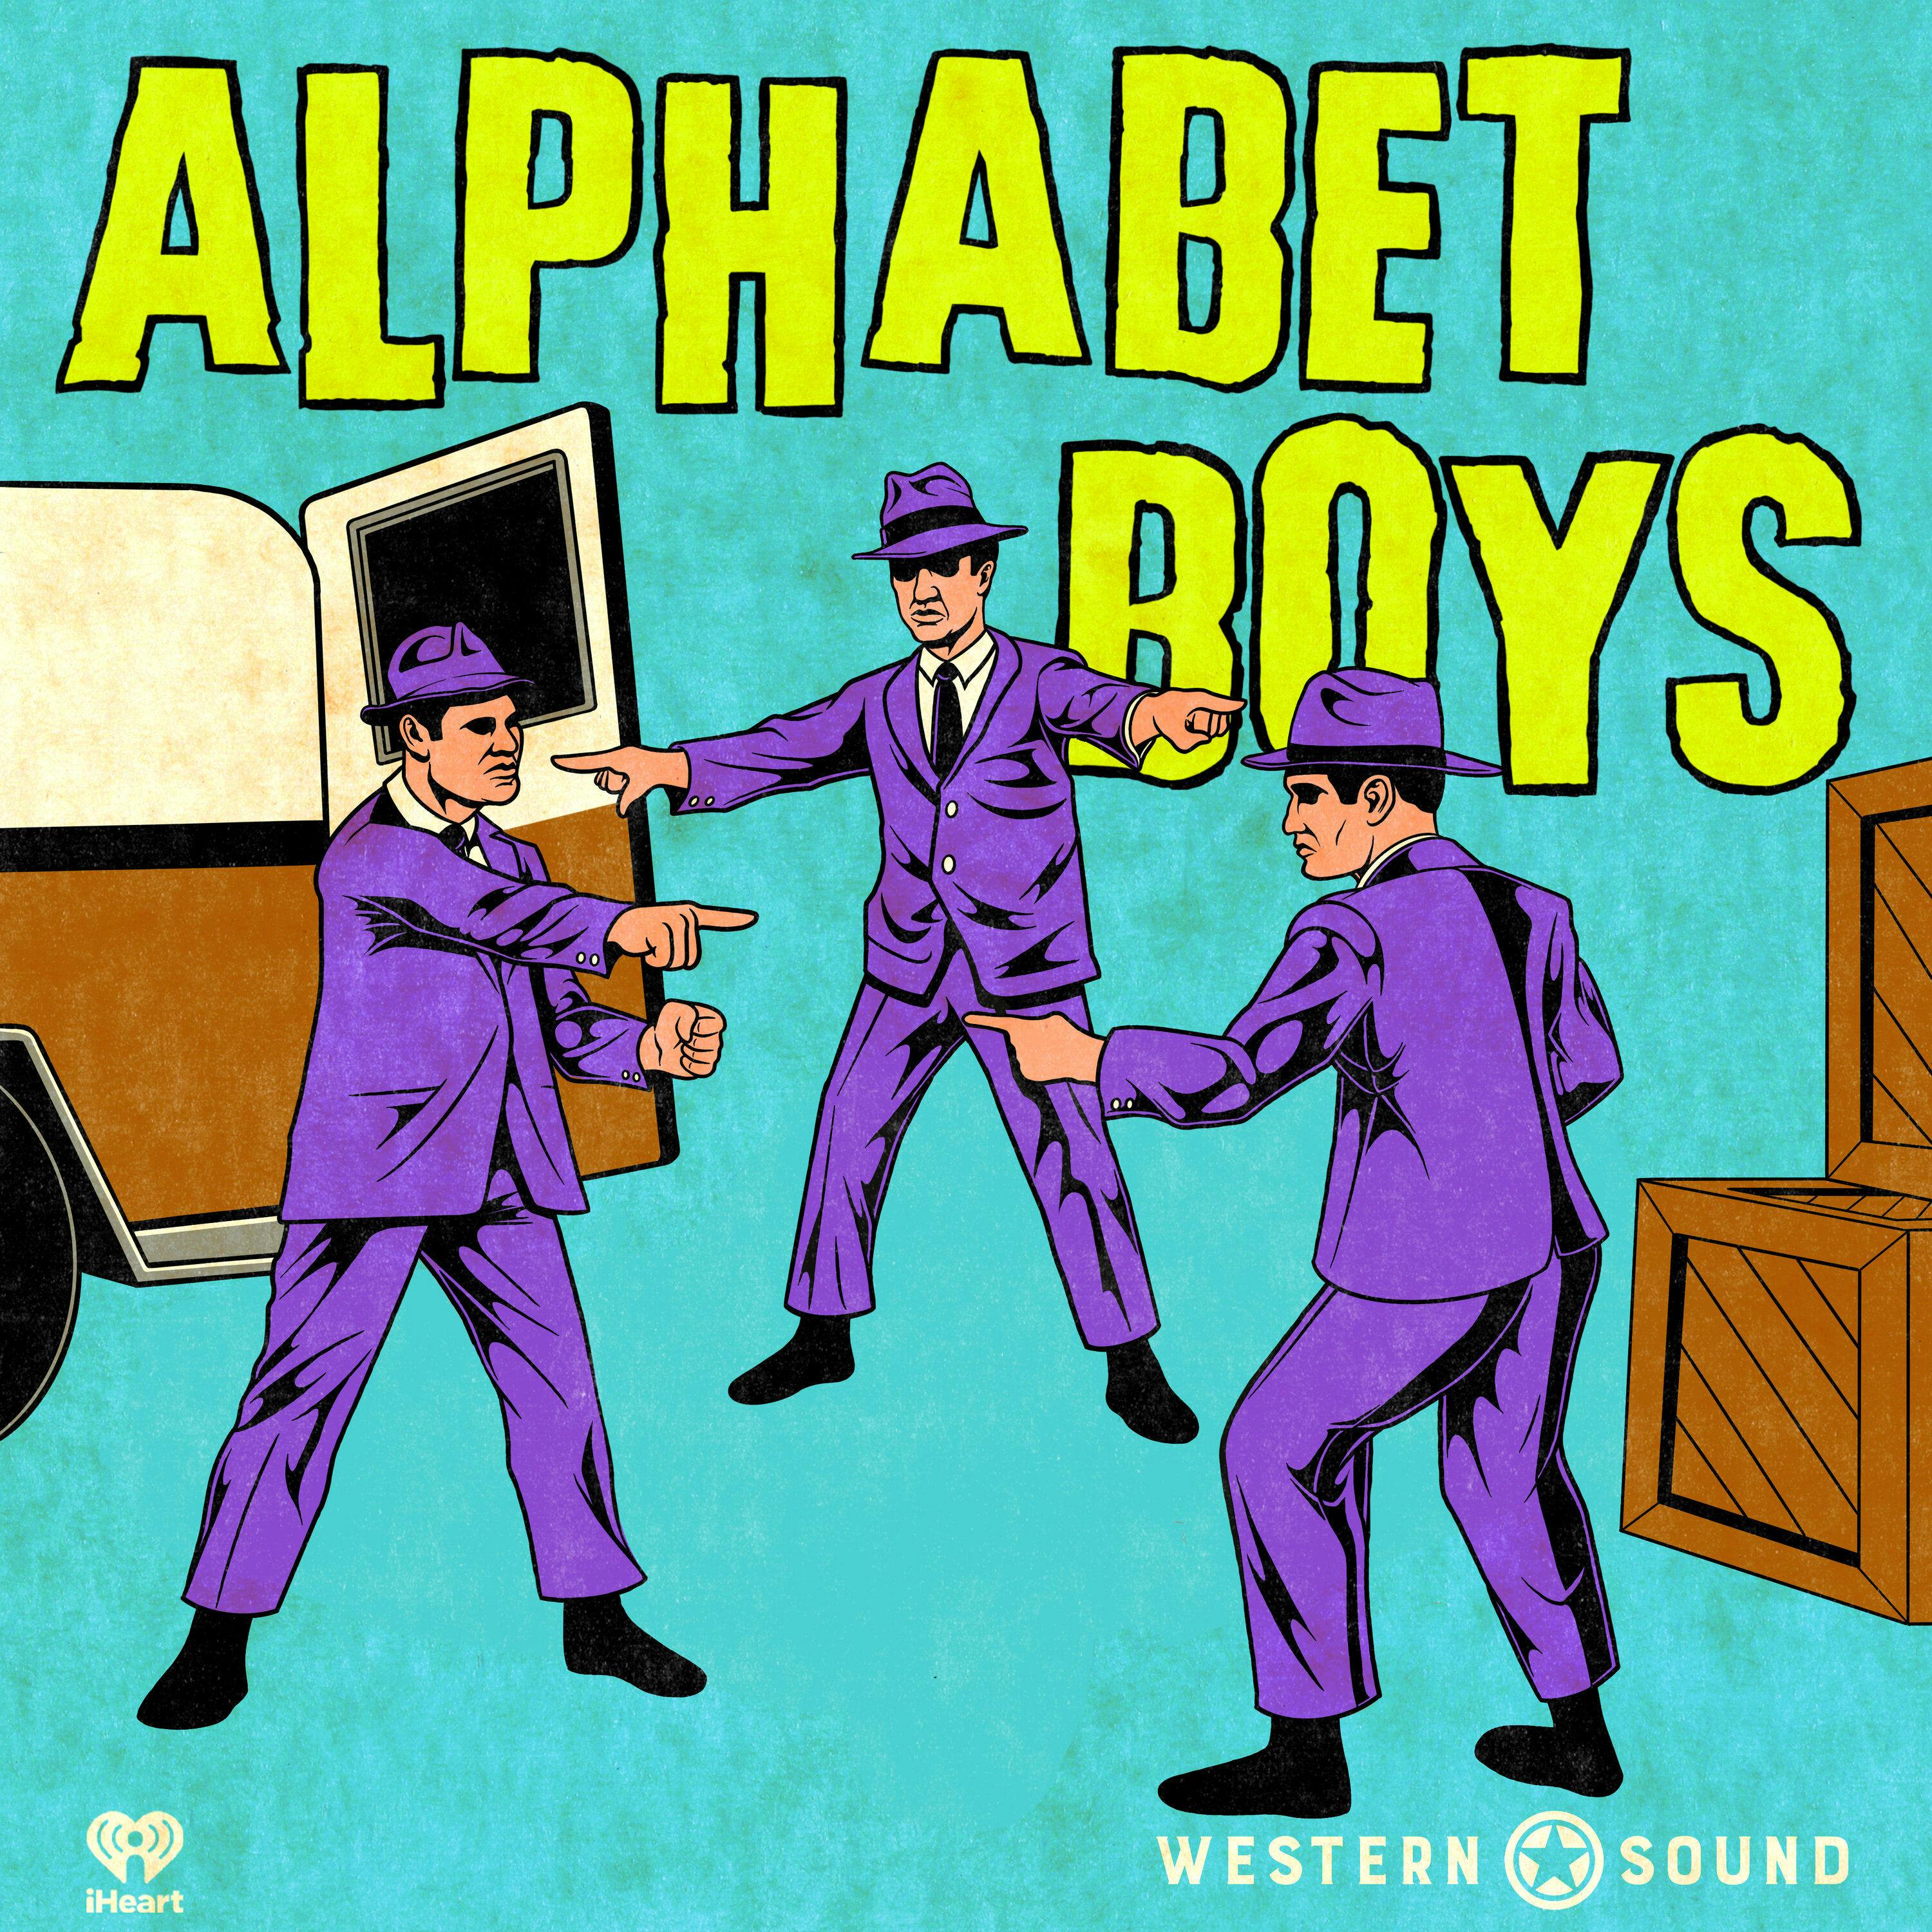 Alphabet Boys